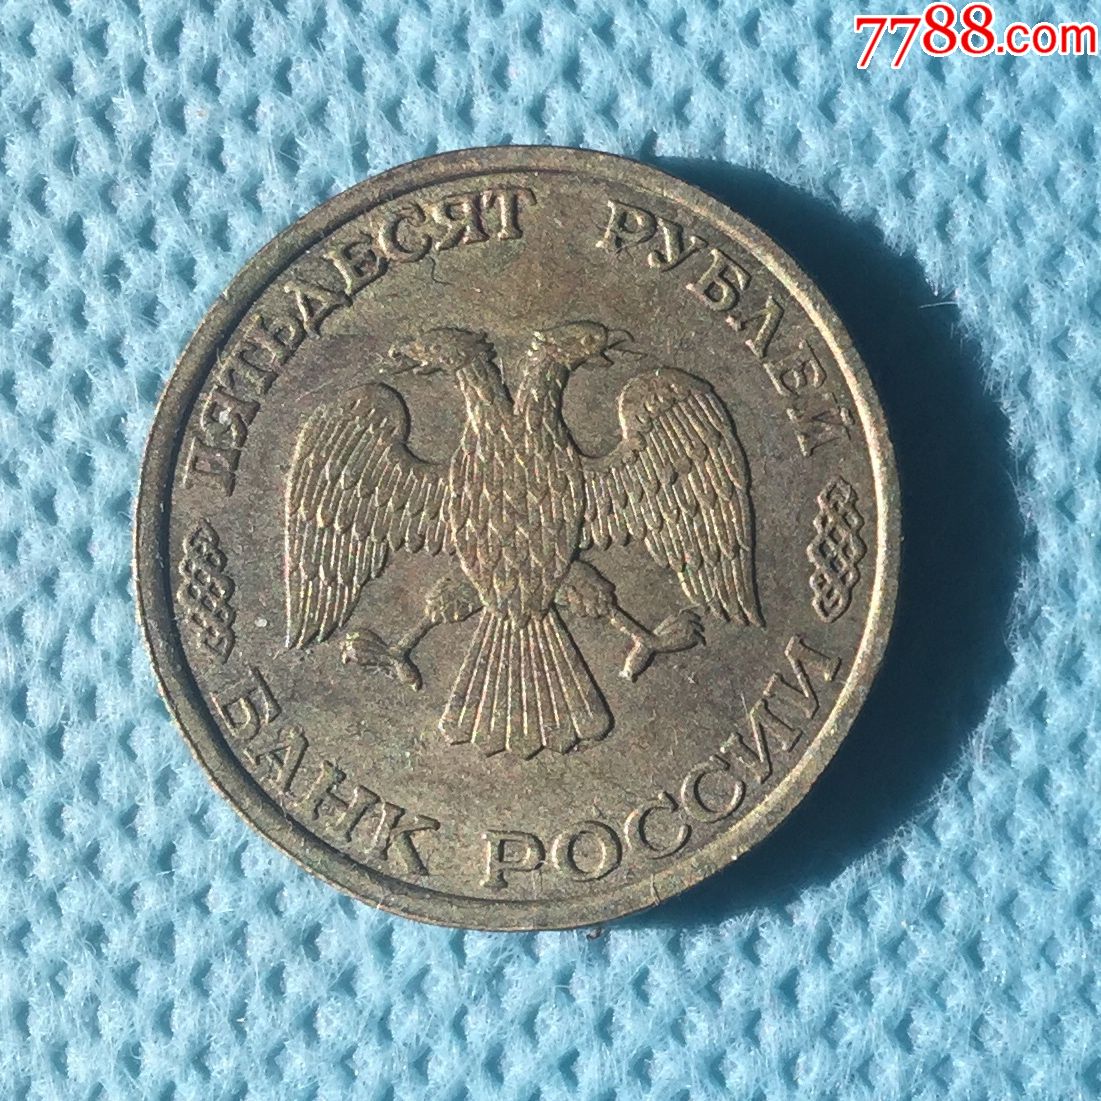 苏联解体后俄罗斯的第一批50卢布硬币93年版